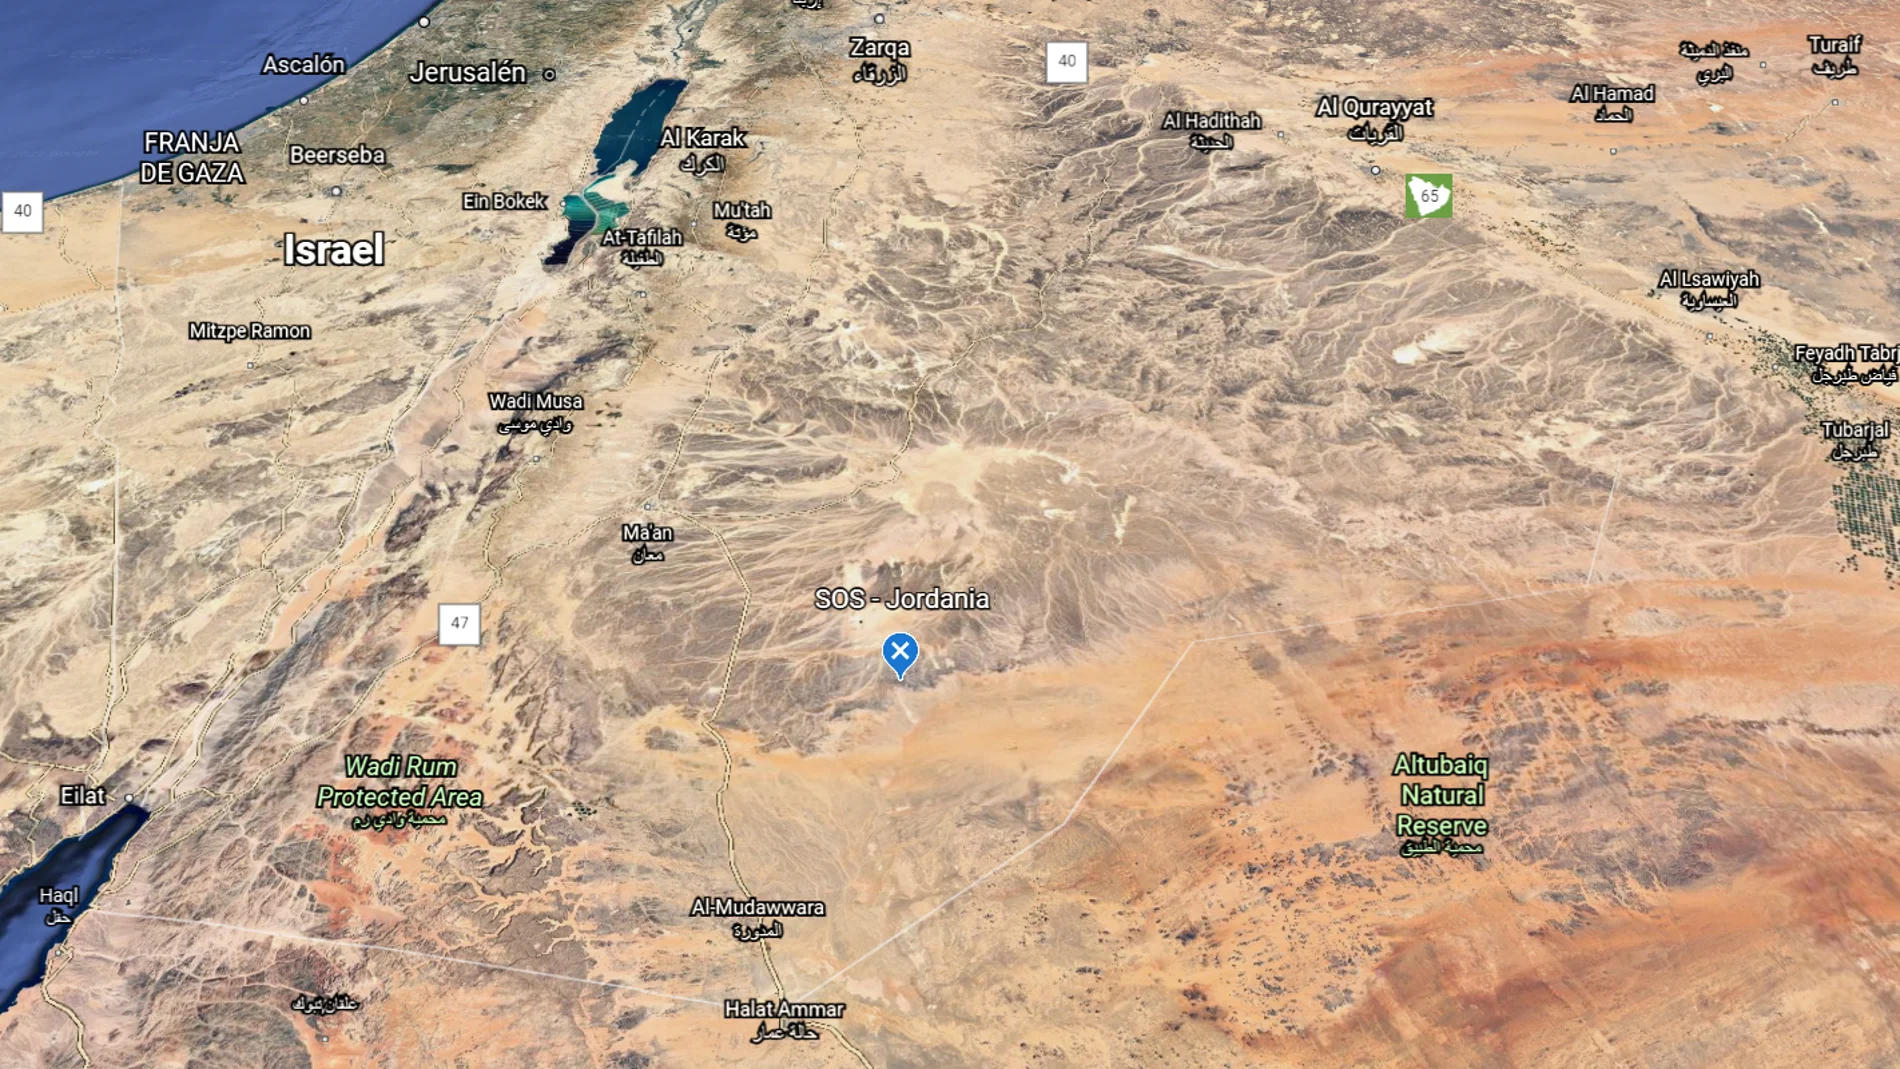 El misterio de la llamada SOS encontrada en Google Earth